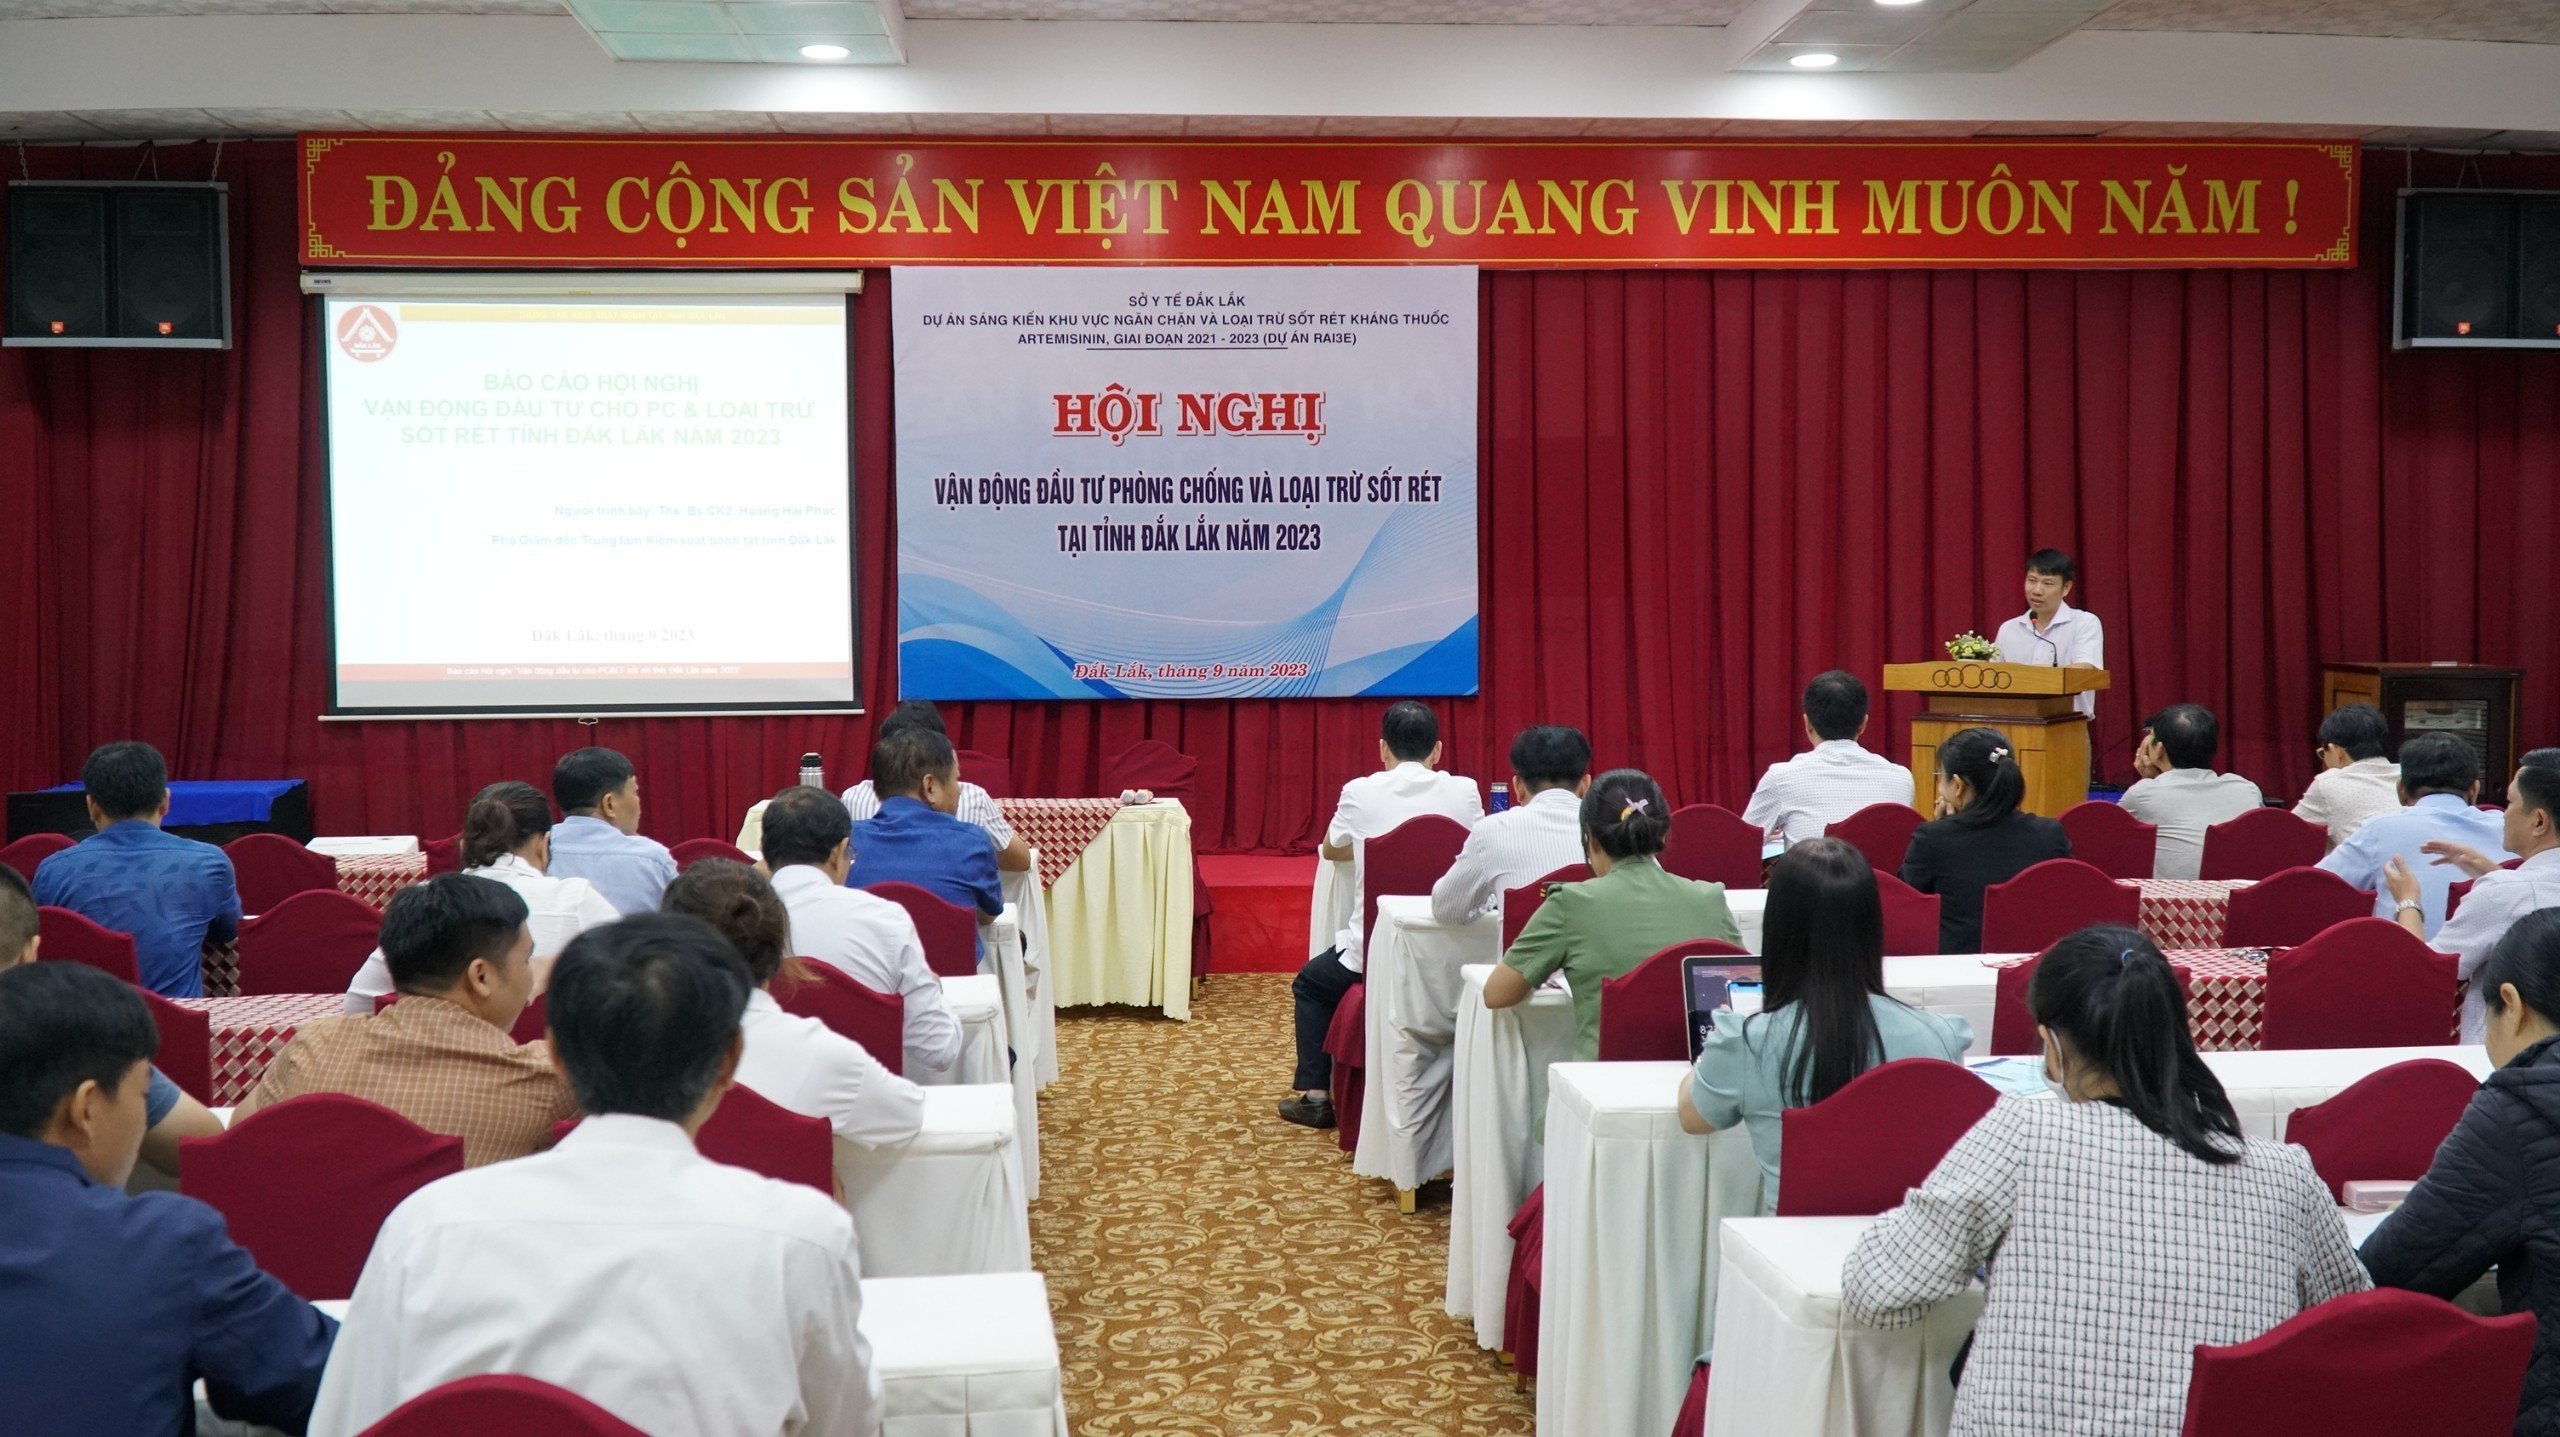 Vận động đầu tư phòng chống và loại trừ sốt rét tại tỉnh Đắk Lắk năm 2023